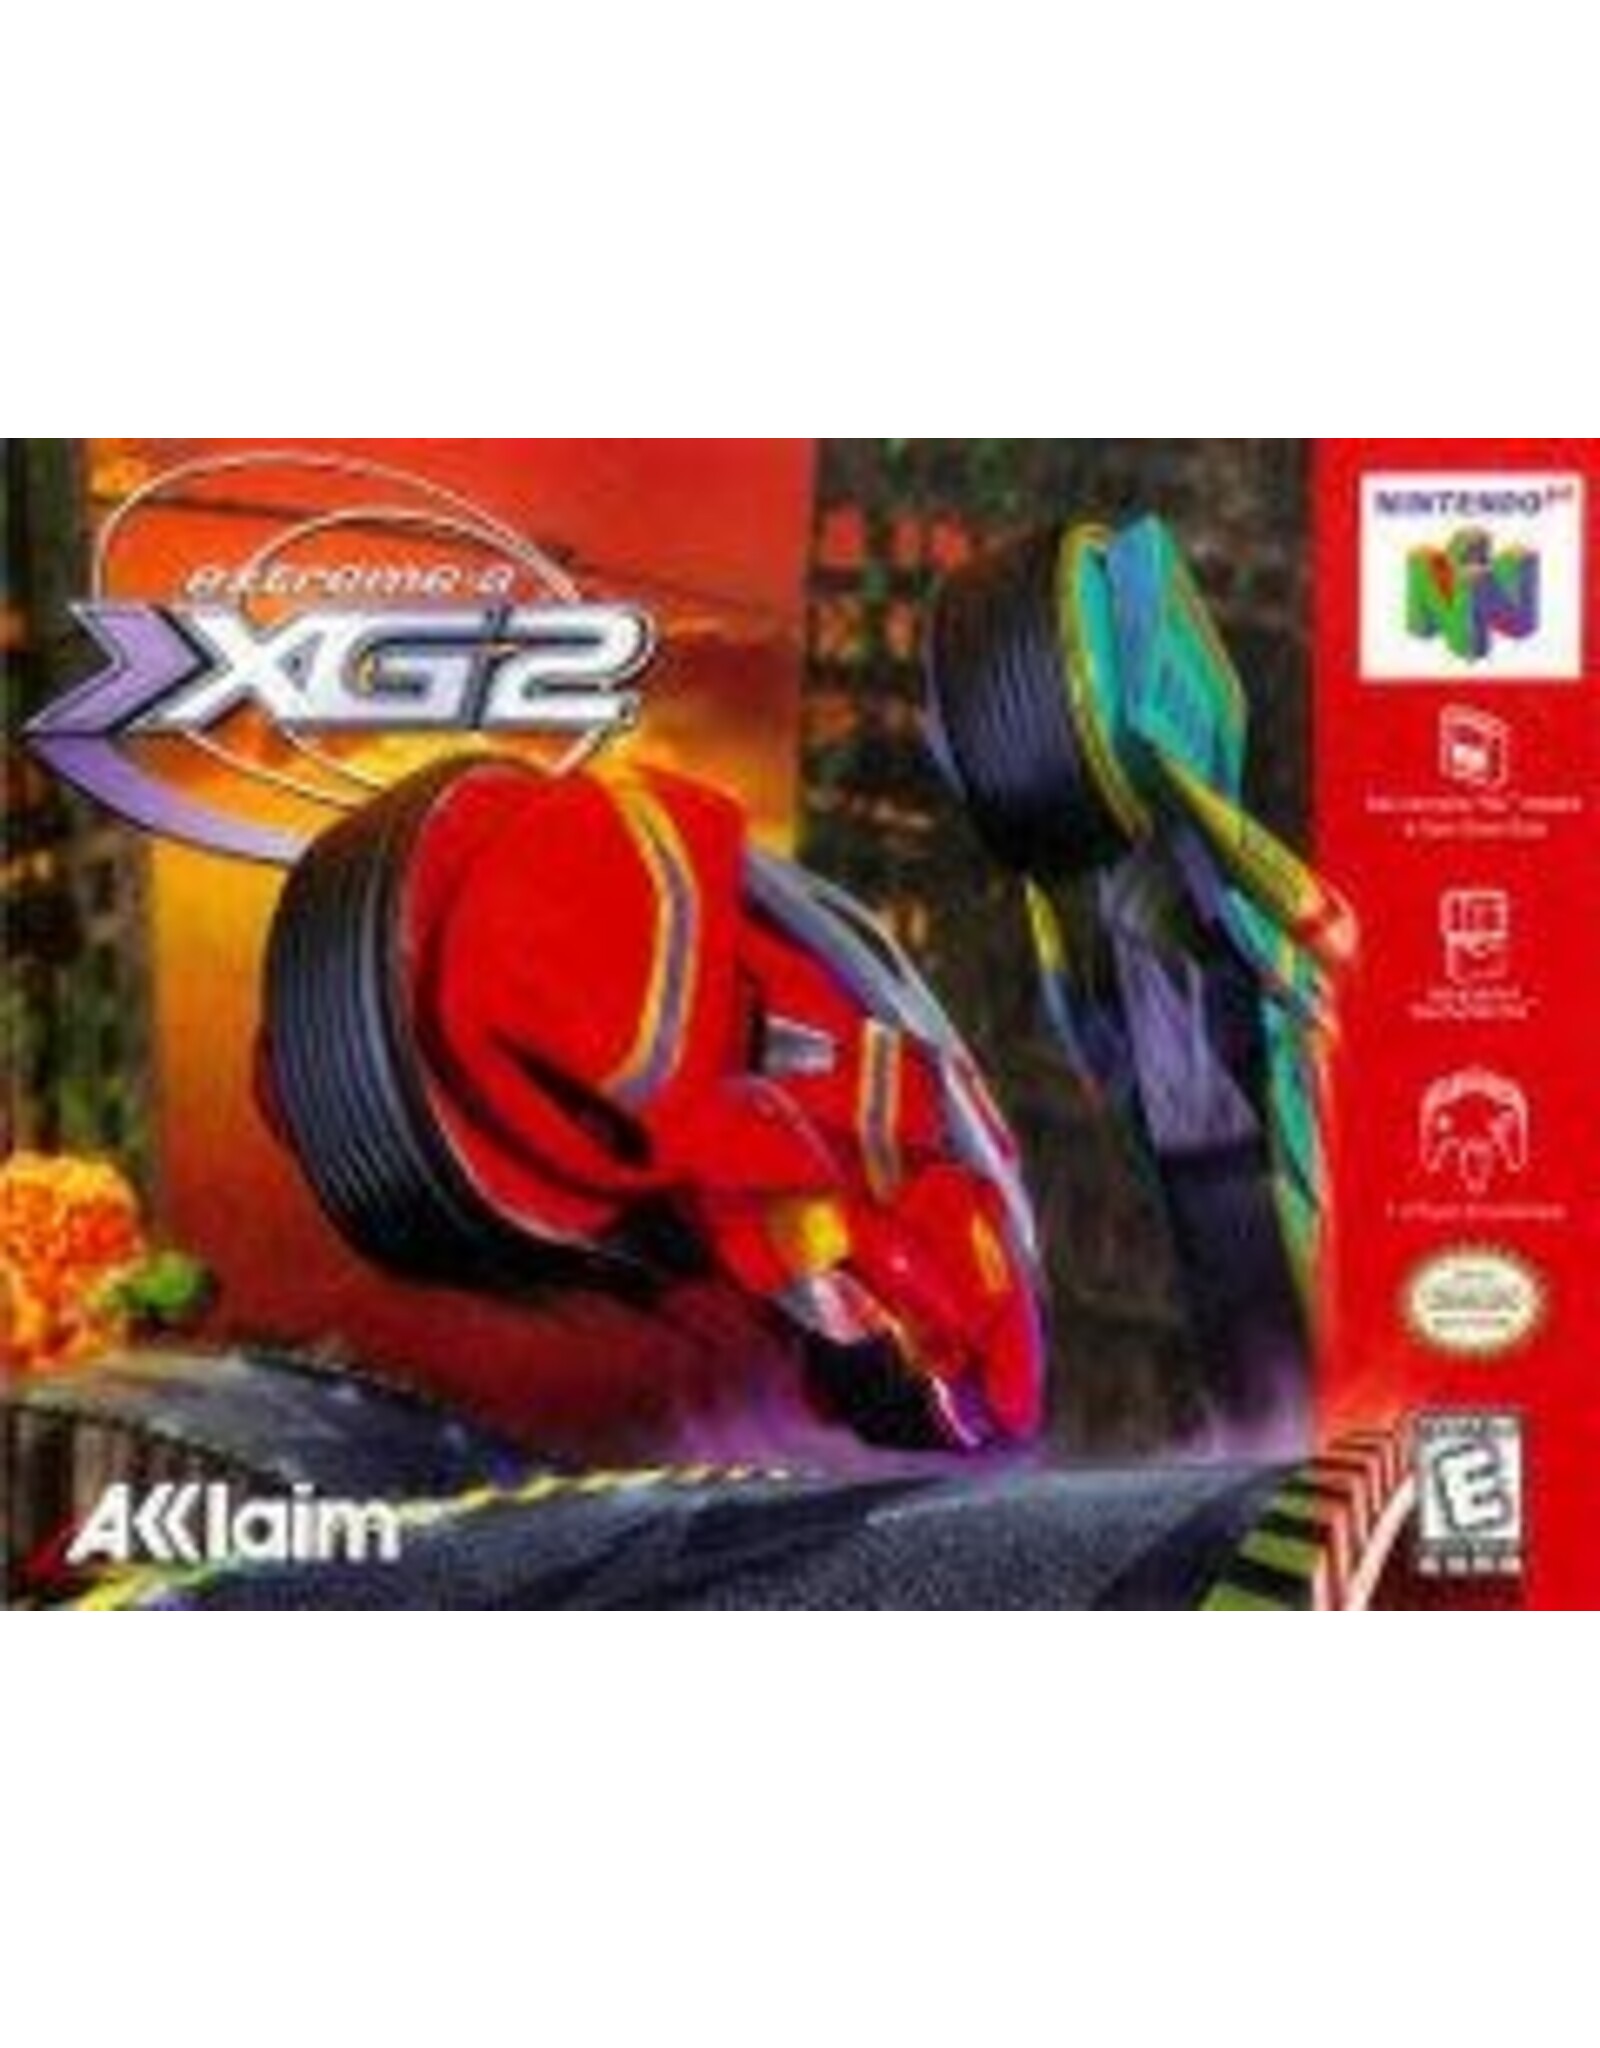 Nintendo 64 XG2 Extreme-G 2 (Used, Cart Only)